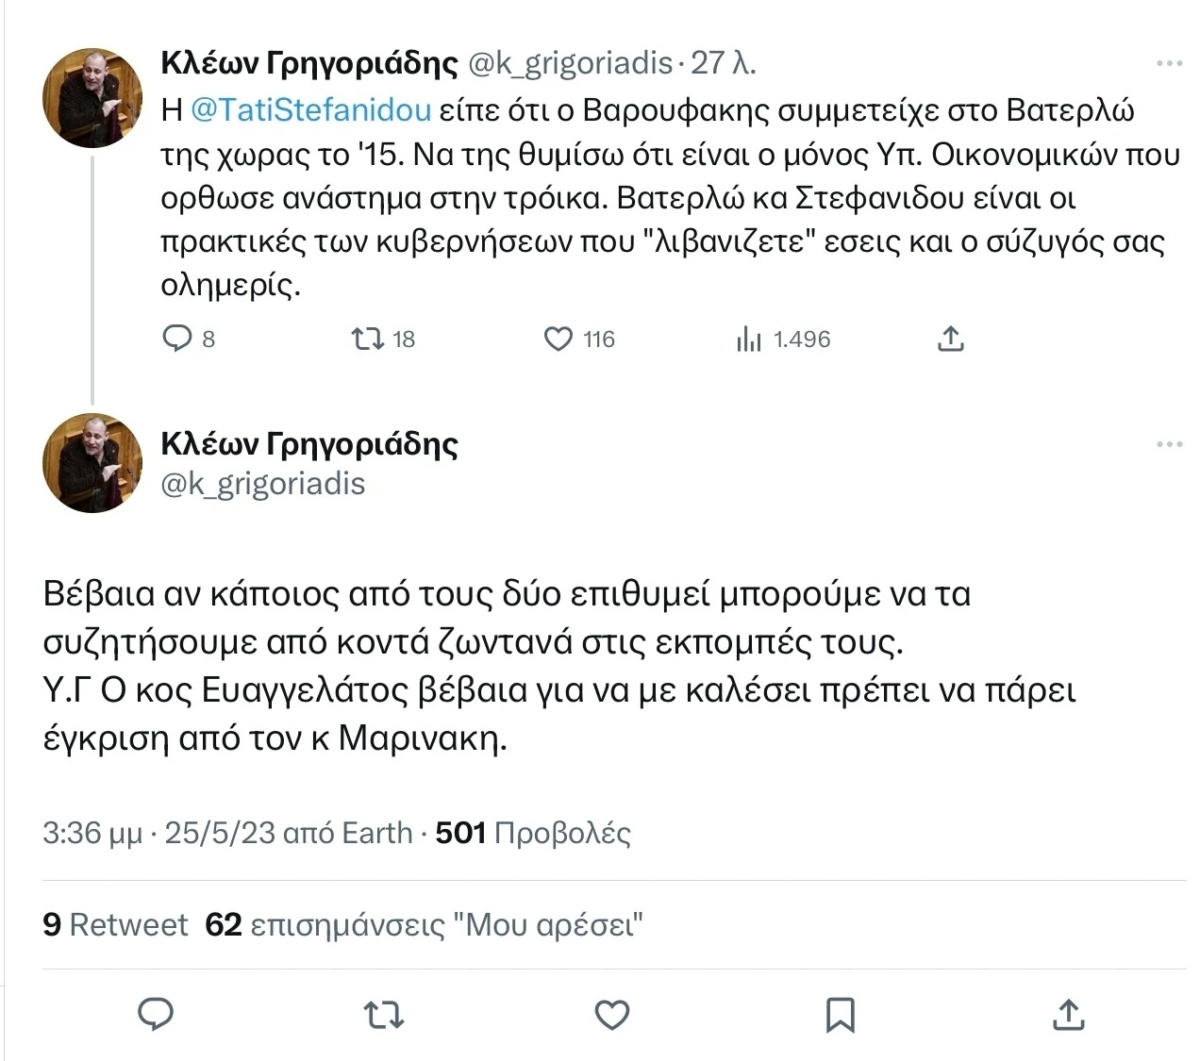 Αμφιλεγόμενη επίθεση: Ο Κλέων Γρηγοριάδης στοχοποιεί την Τατιάνα Στεφανίδου και τον Νίκο Ευαγγελάτο